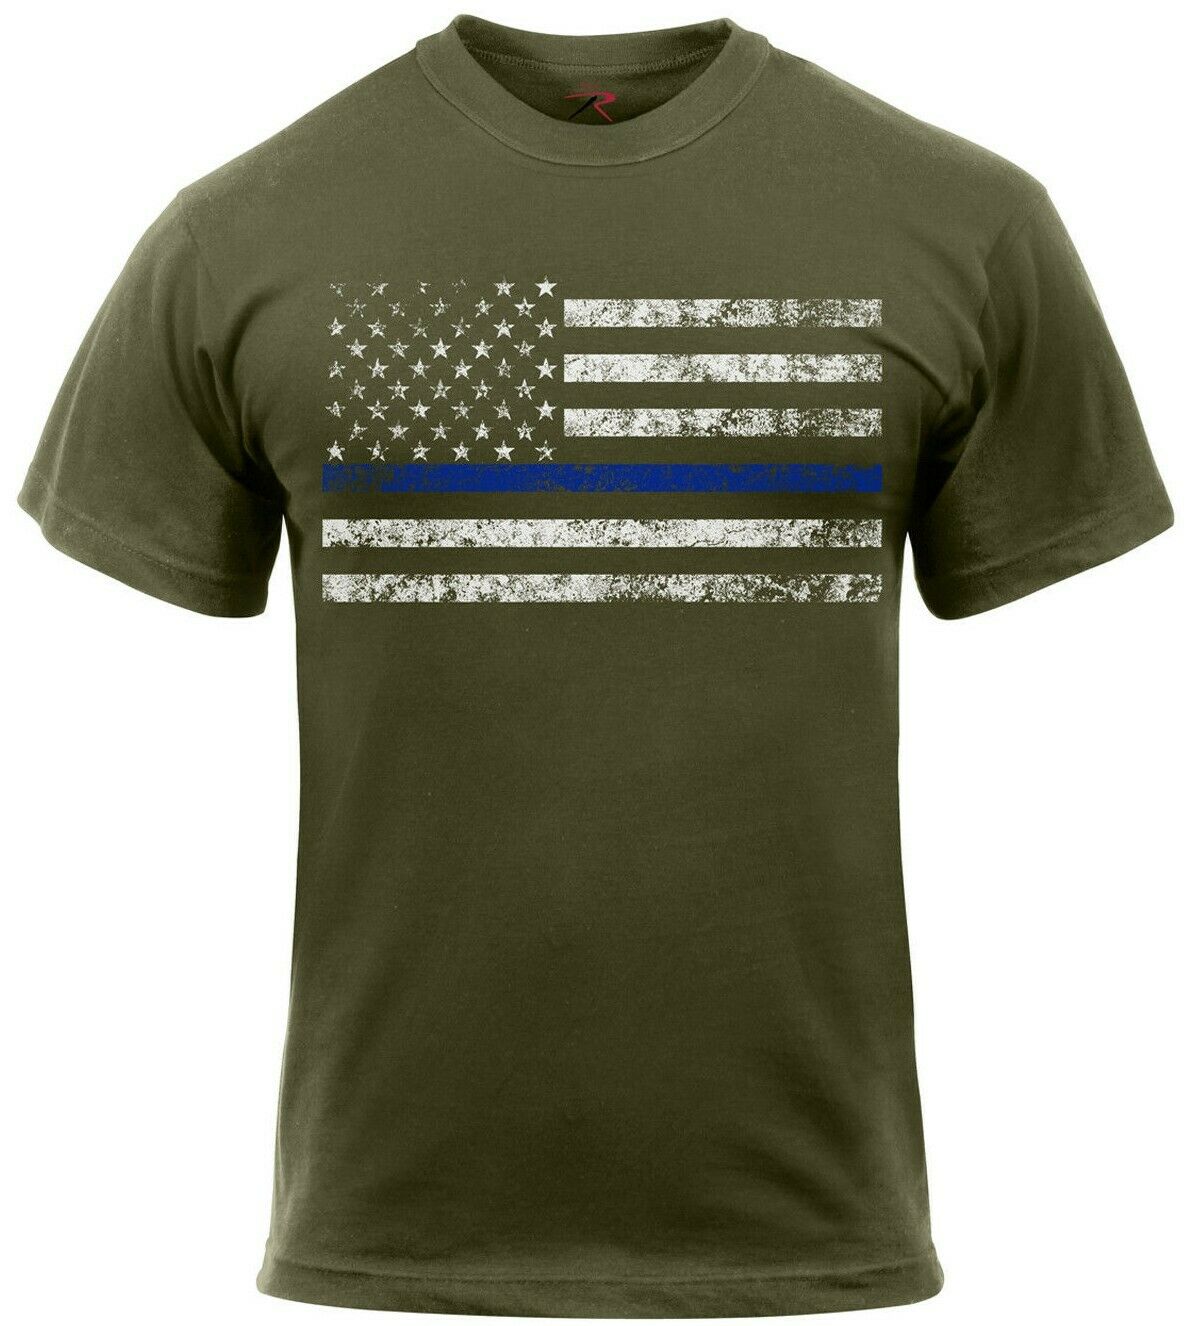 Rothco Thin Blue Line T-Shirt - Olive Drab